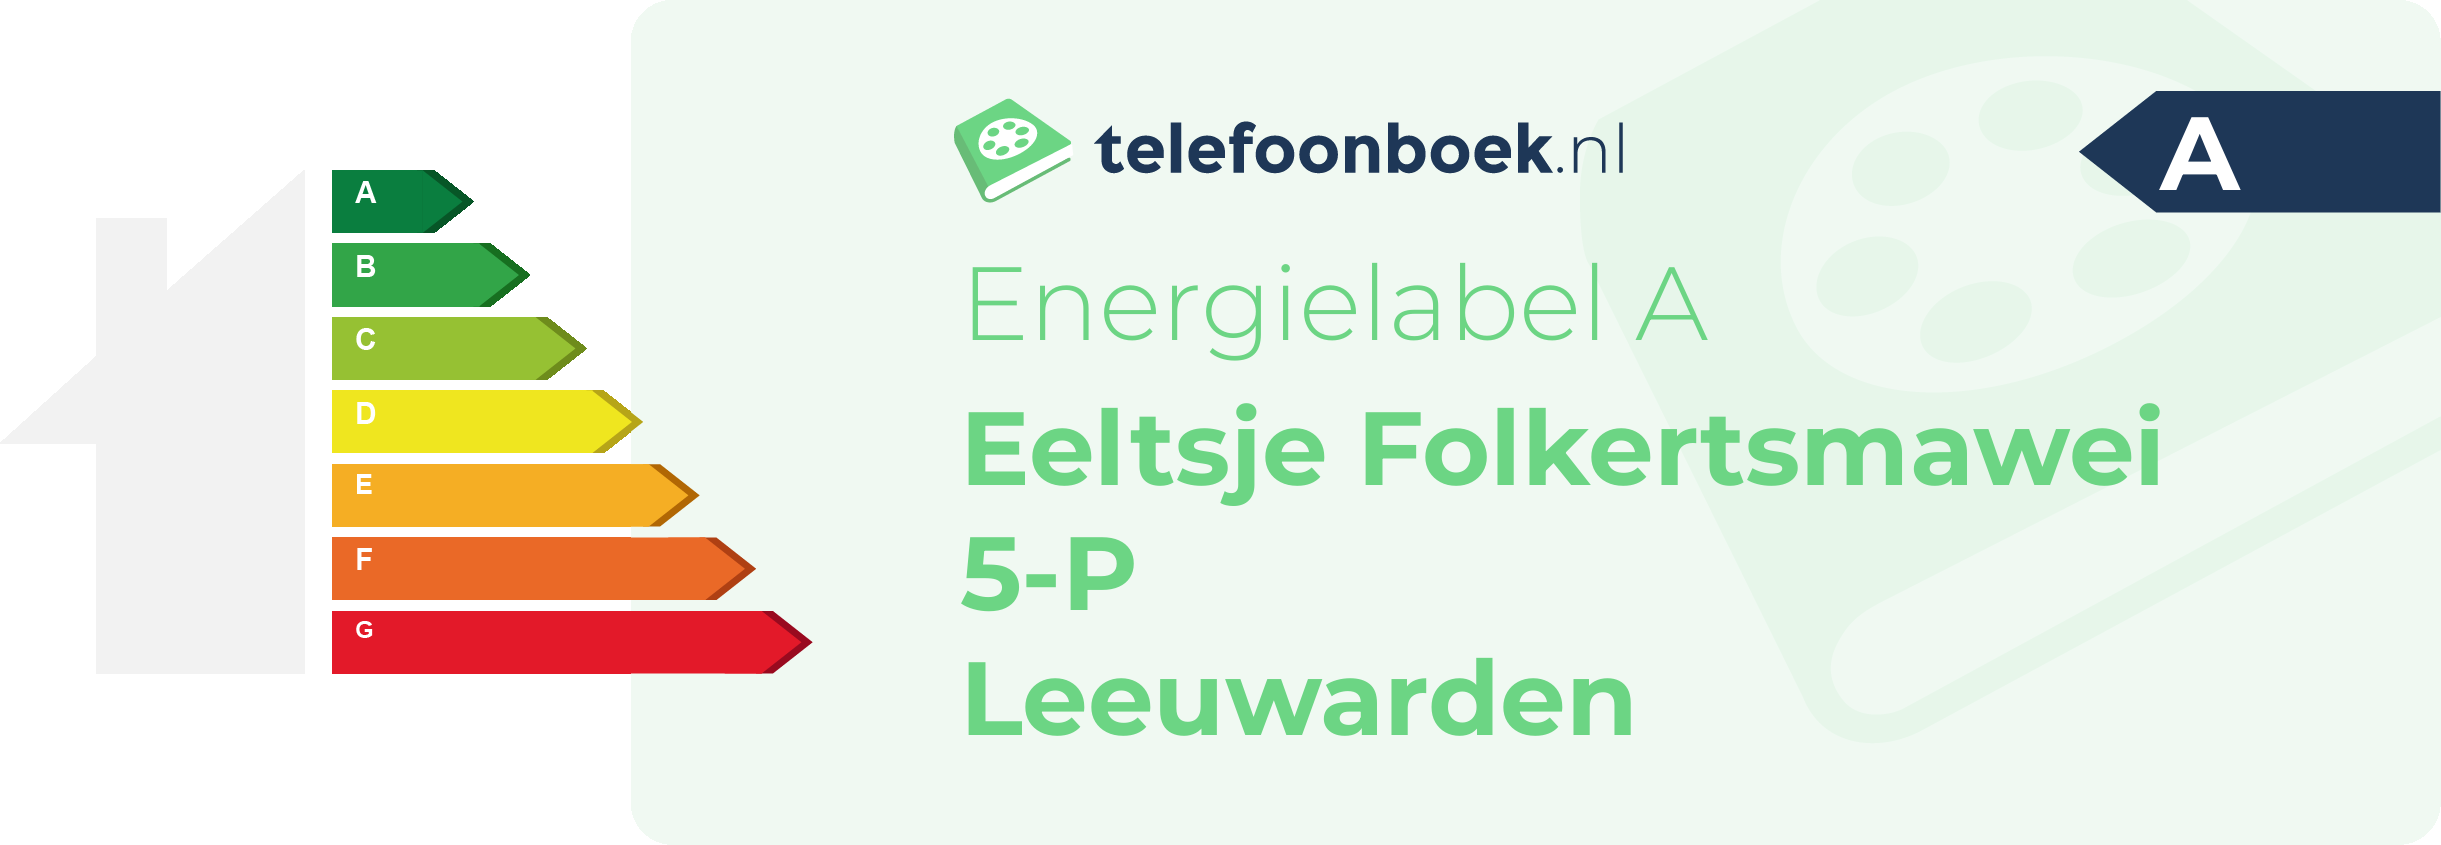 Energielabel Eeltsje Folkertsmawei 5-P Leeuwarden